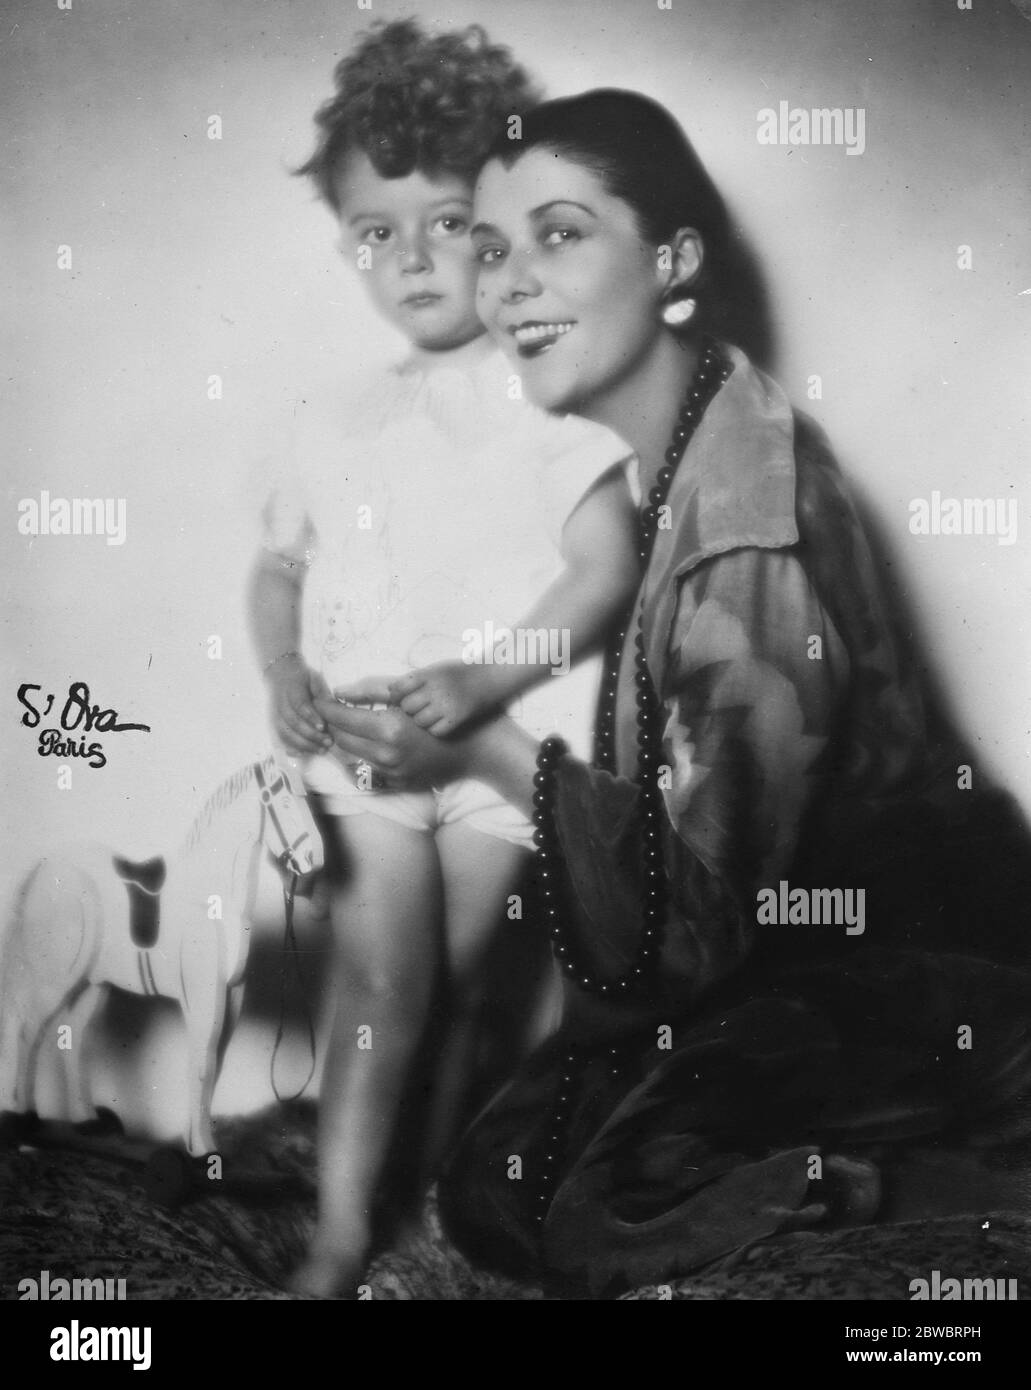 Das Idol der Pariser Bühne . Mlle Spinelly, das Idol der Pariser Theaterbesucher, mit ihrem Sohn Manuel, der als kleine SPI bekannt ist. Dezember 1925 Stockfoto